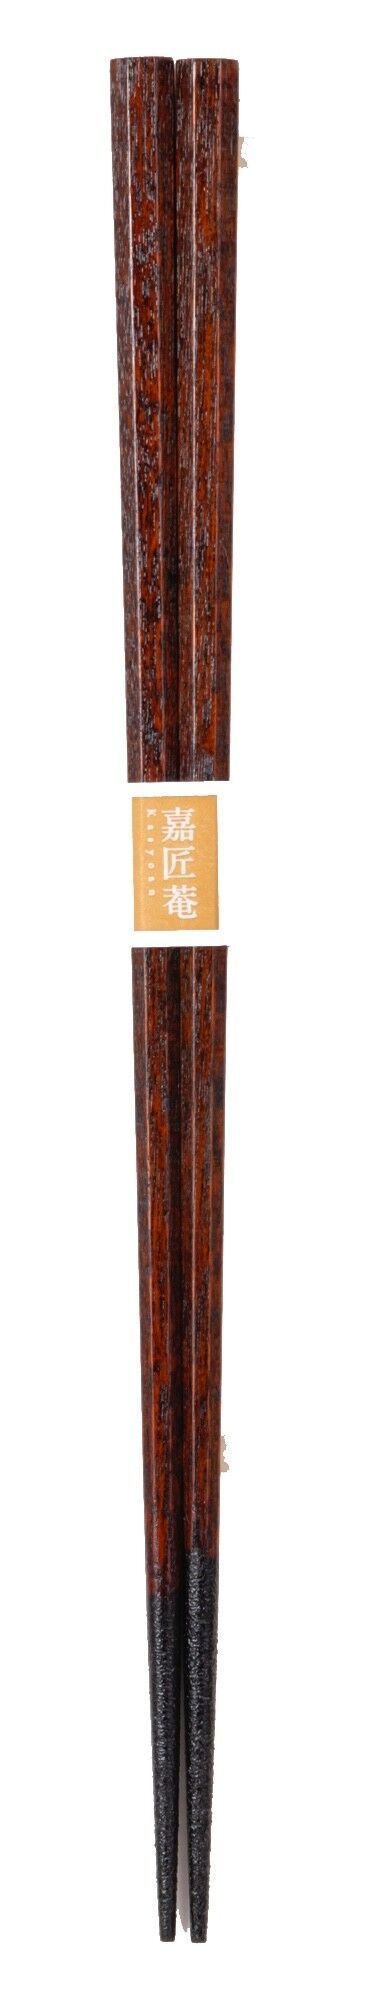 SF-0772 Yamanakanuri-Domestic Chopsticks, Octagonal Chopsticks, Chazuri by Shoji Kuboze, Traditional Craftsman (with Slip Stopper)